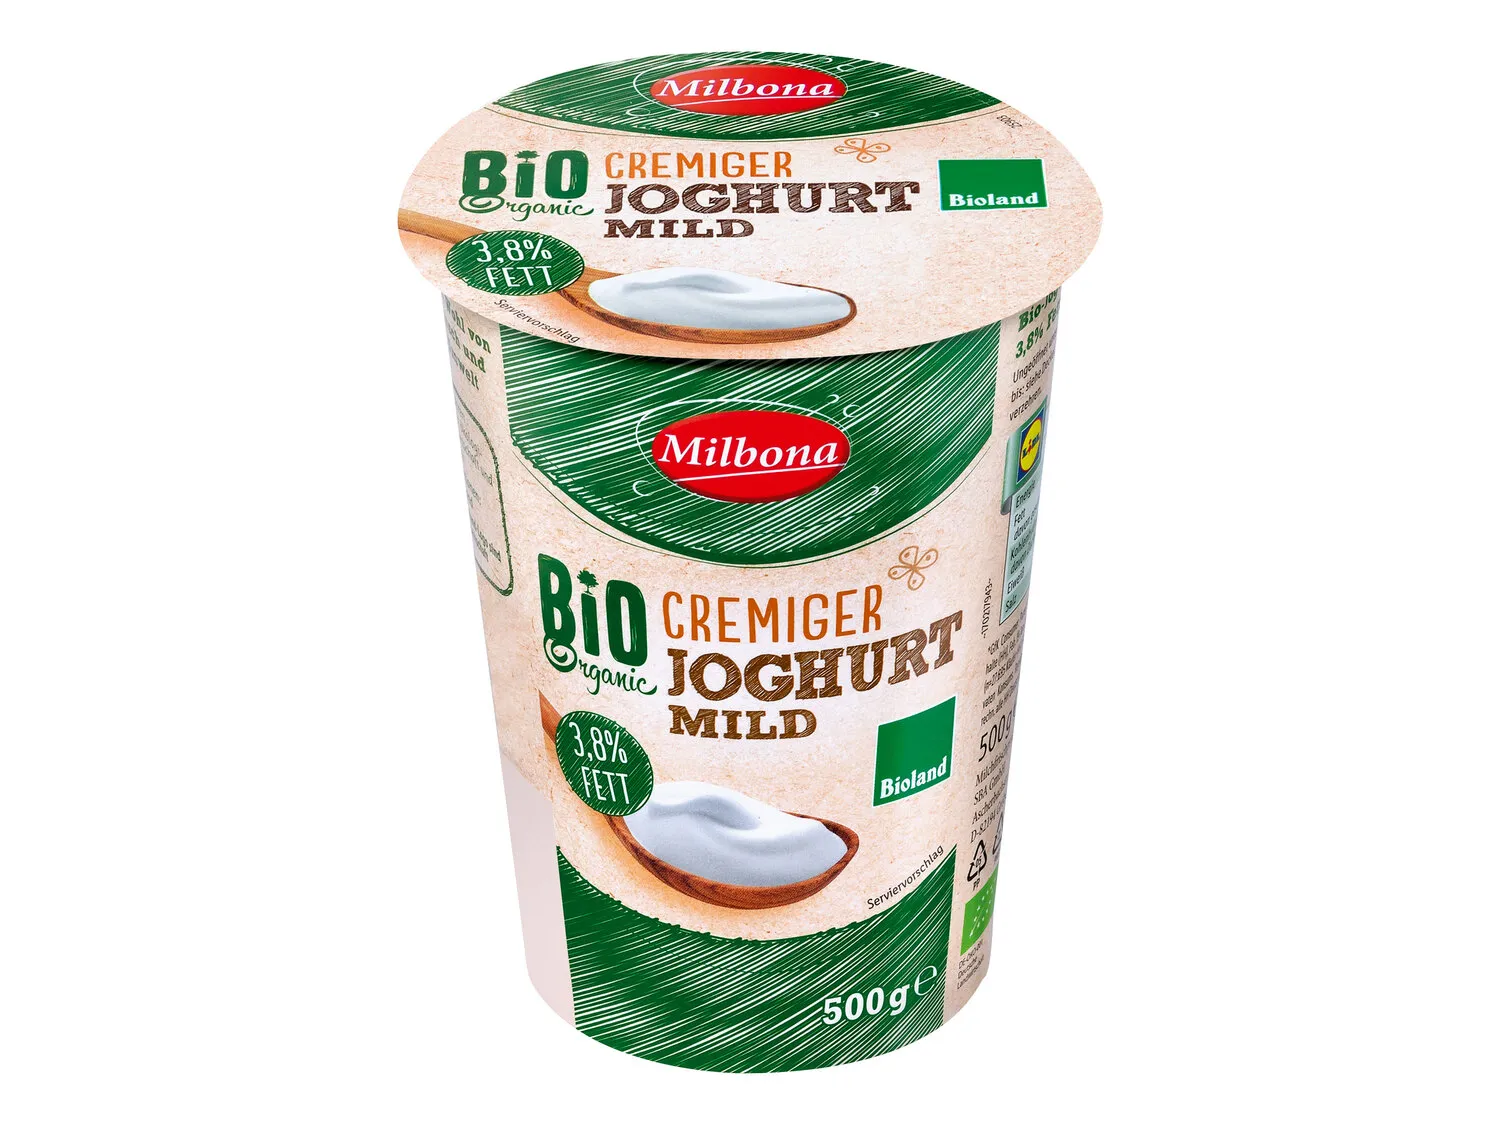 Bioland Joghurt, Deutschland - Lidl mild